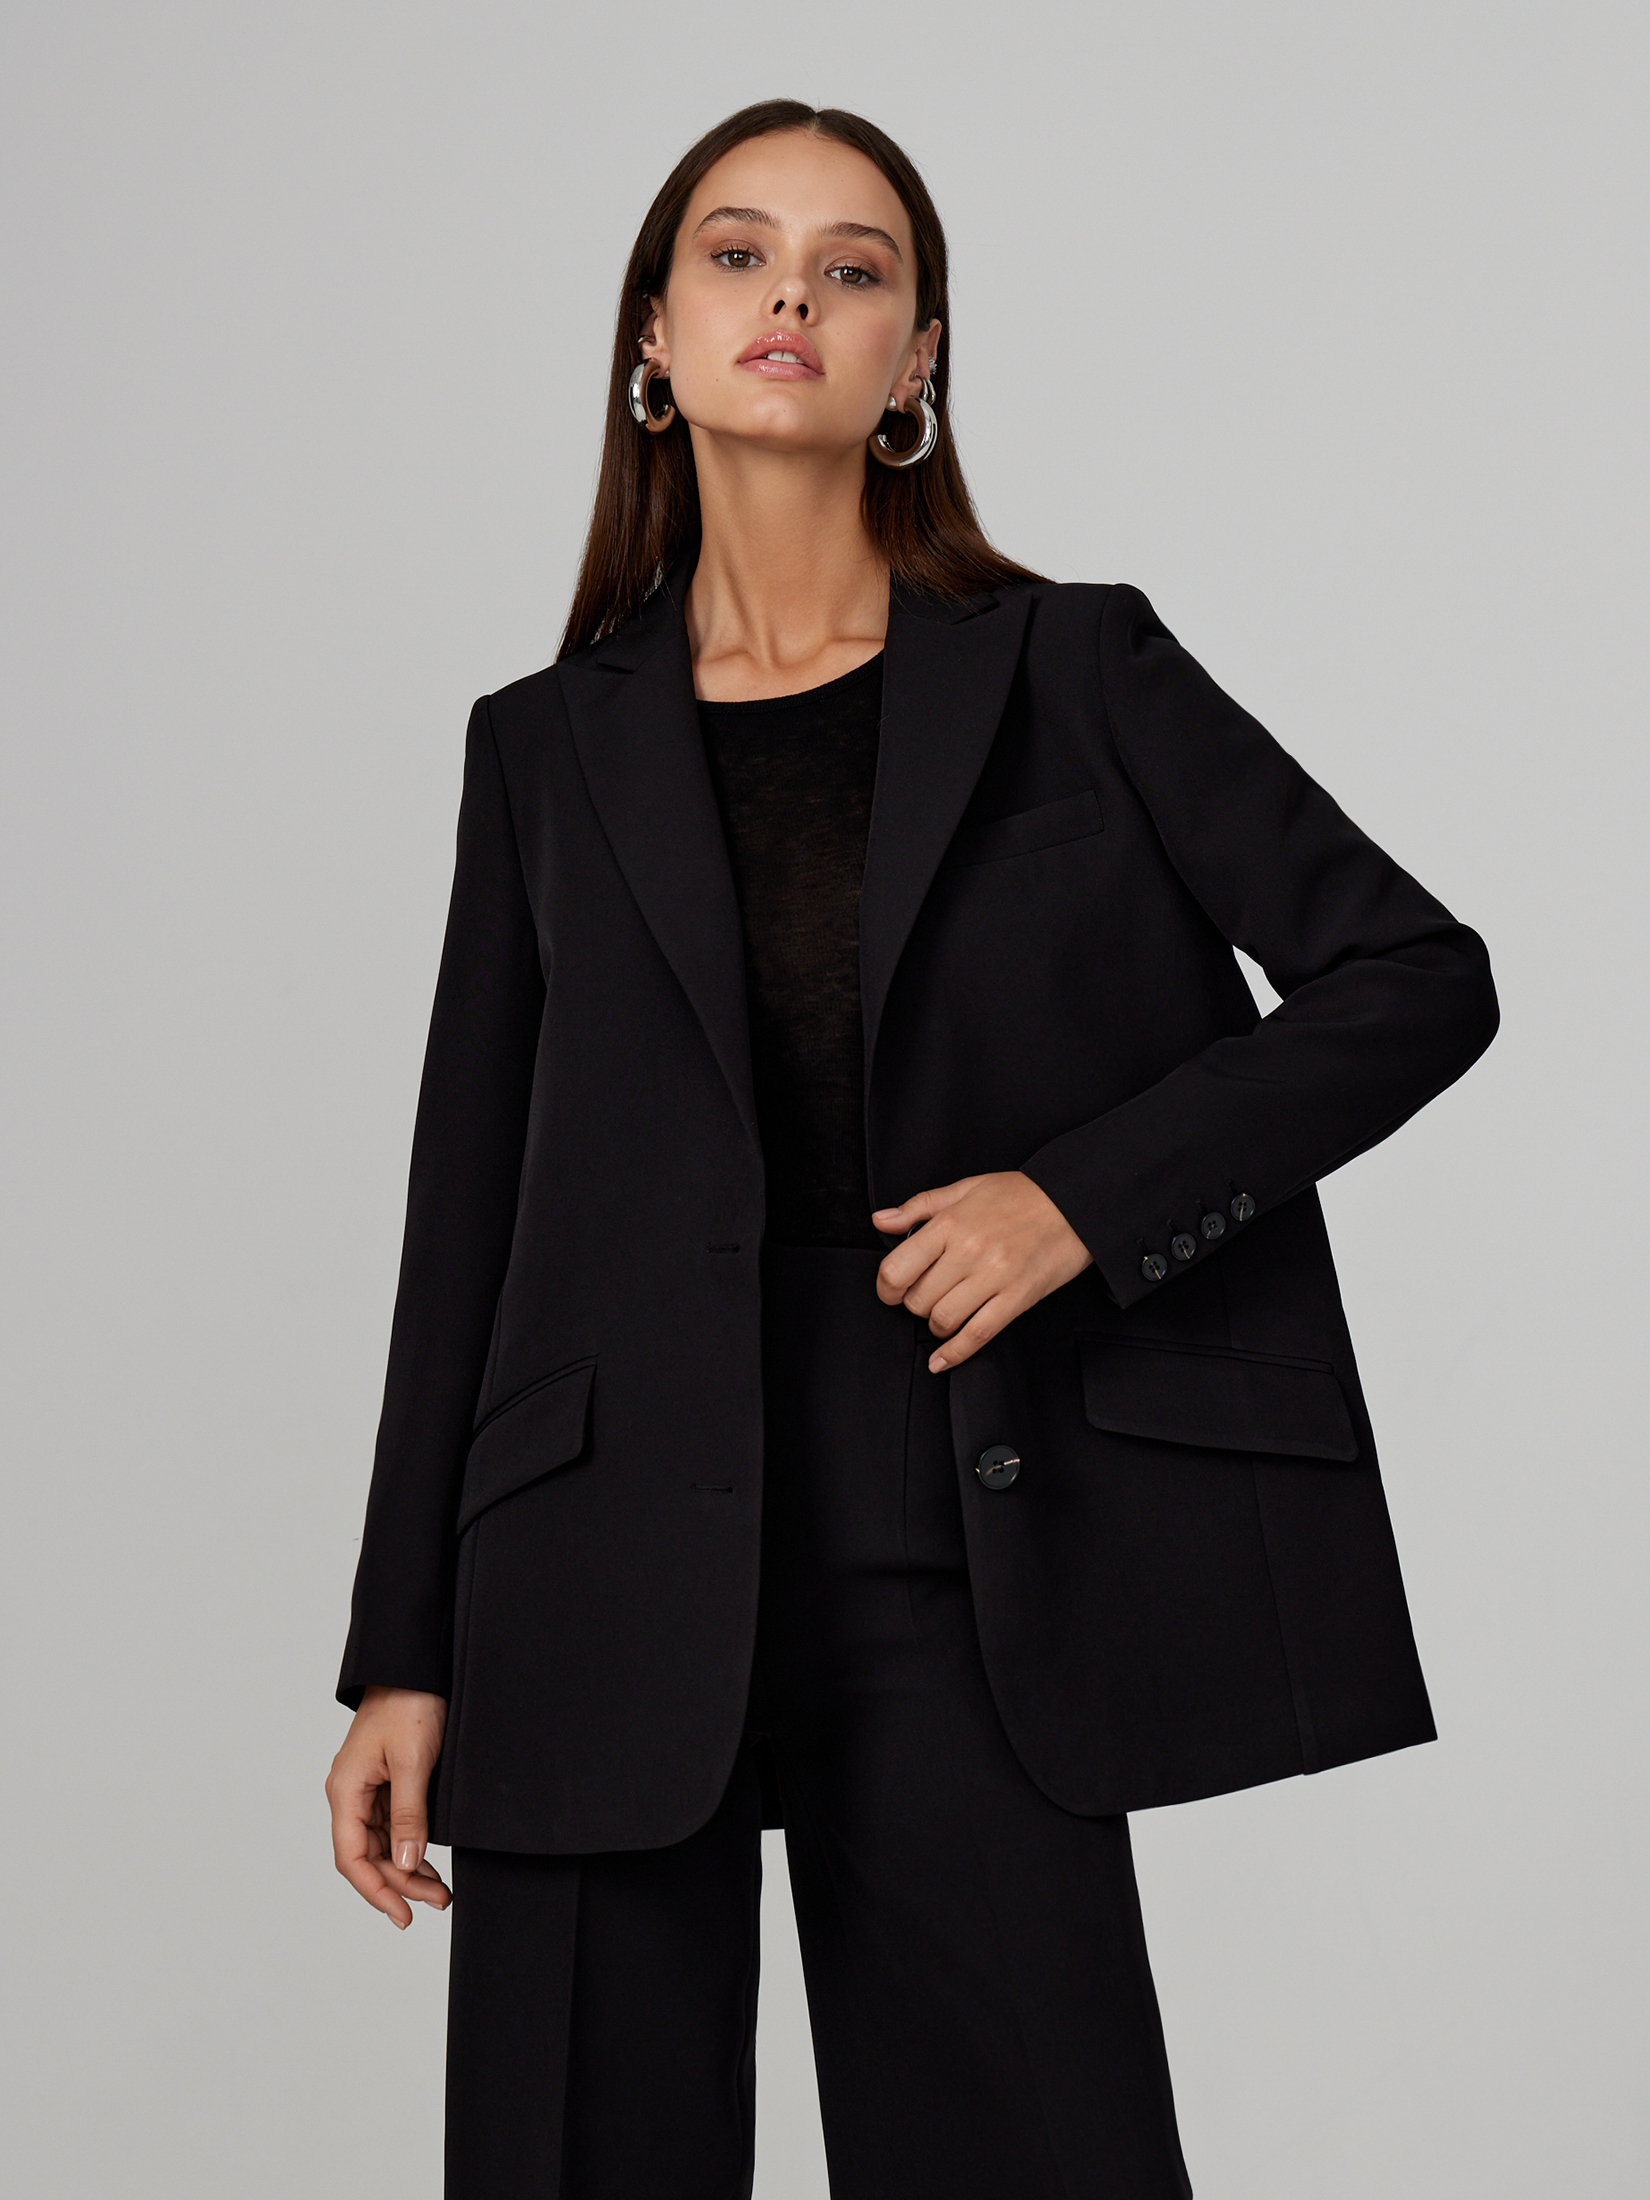 Жакет женский черный пиджак черный нарядный 44 46 размер